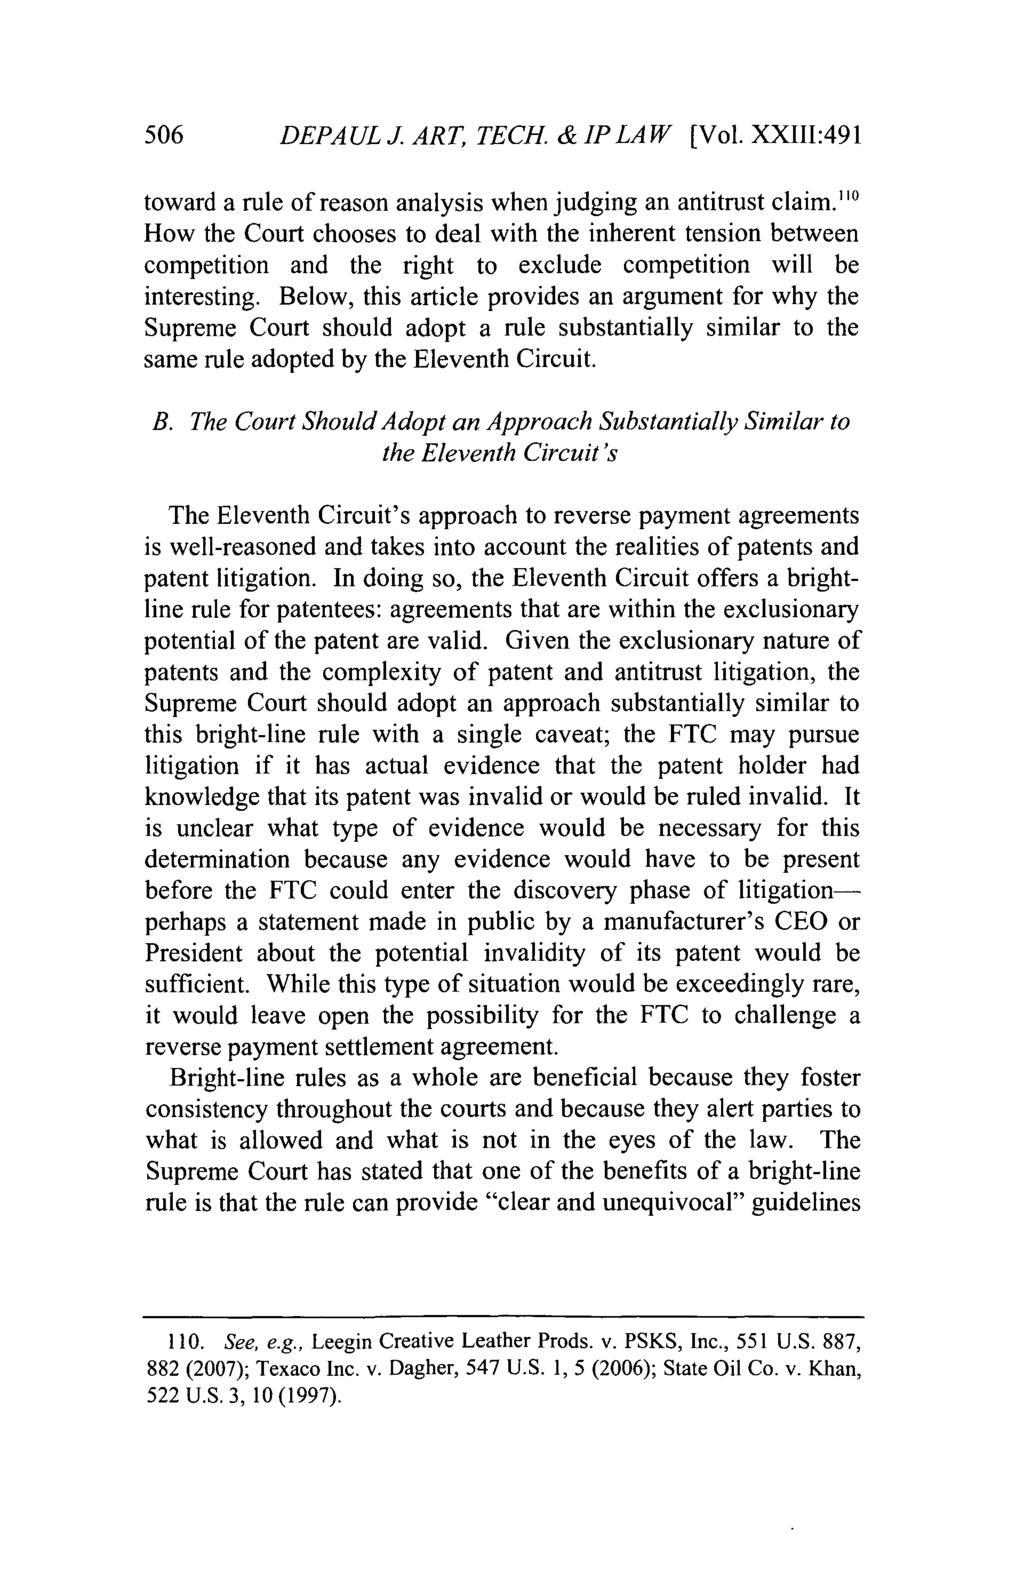 DePaul Journal of Art, Technology & Intellectual Property Law, Vol. 23, Iss. 2 [], Art. 8 506 DEPAUL J. ART, TECH. & IP LAW [Vol.